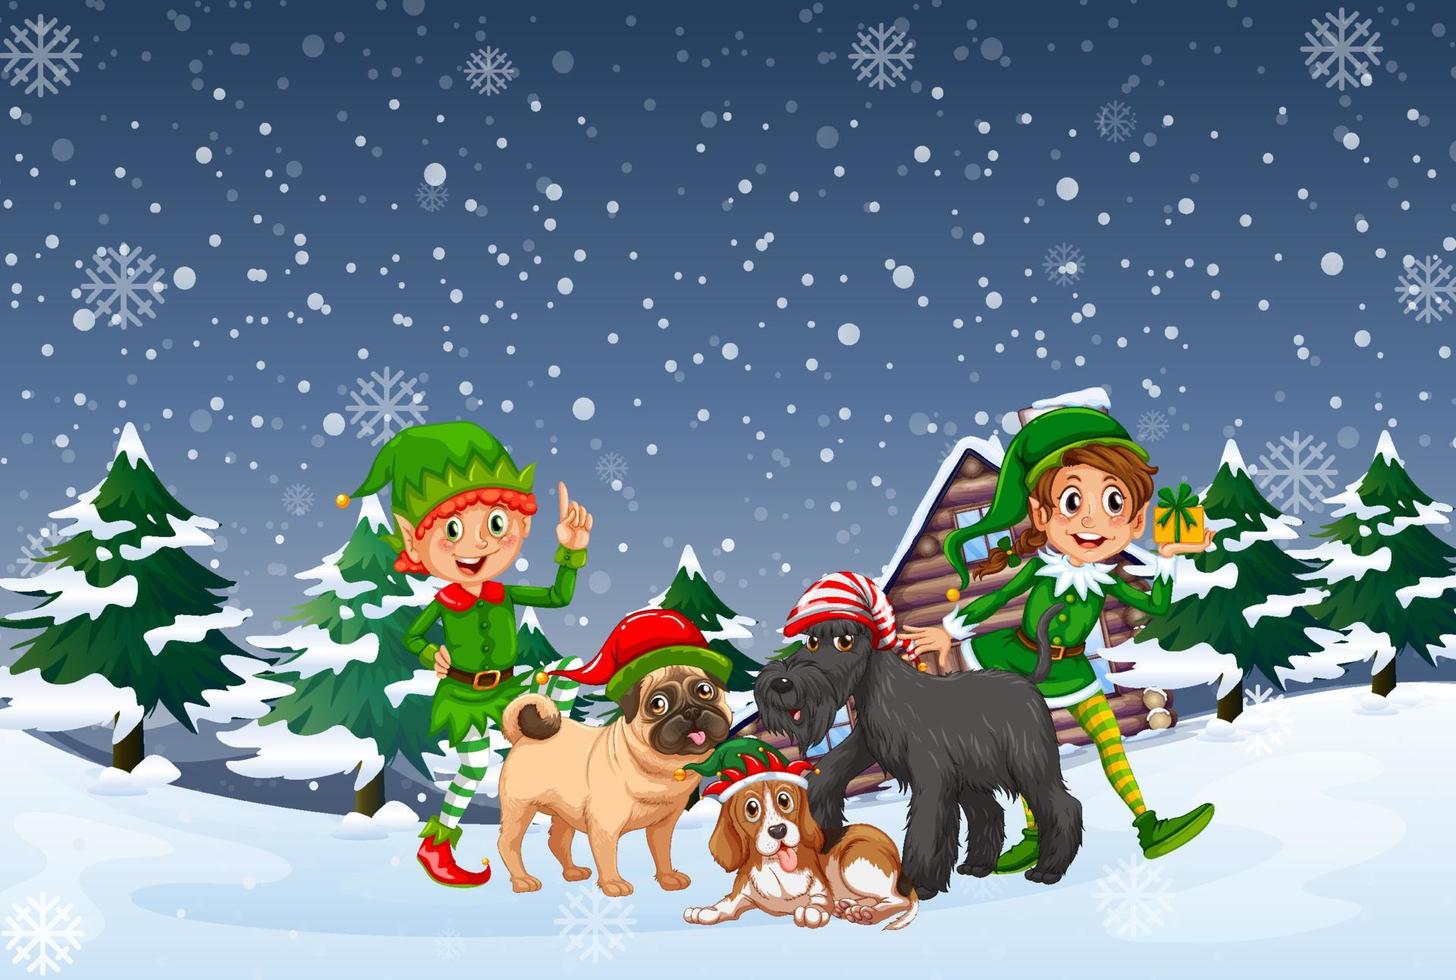 escena nocturna nevada con personajes de dibujos animados de navidad vector